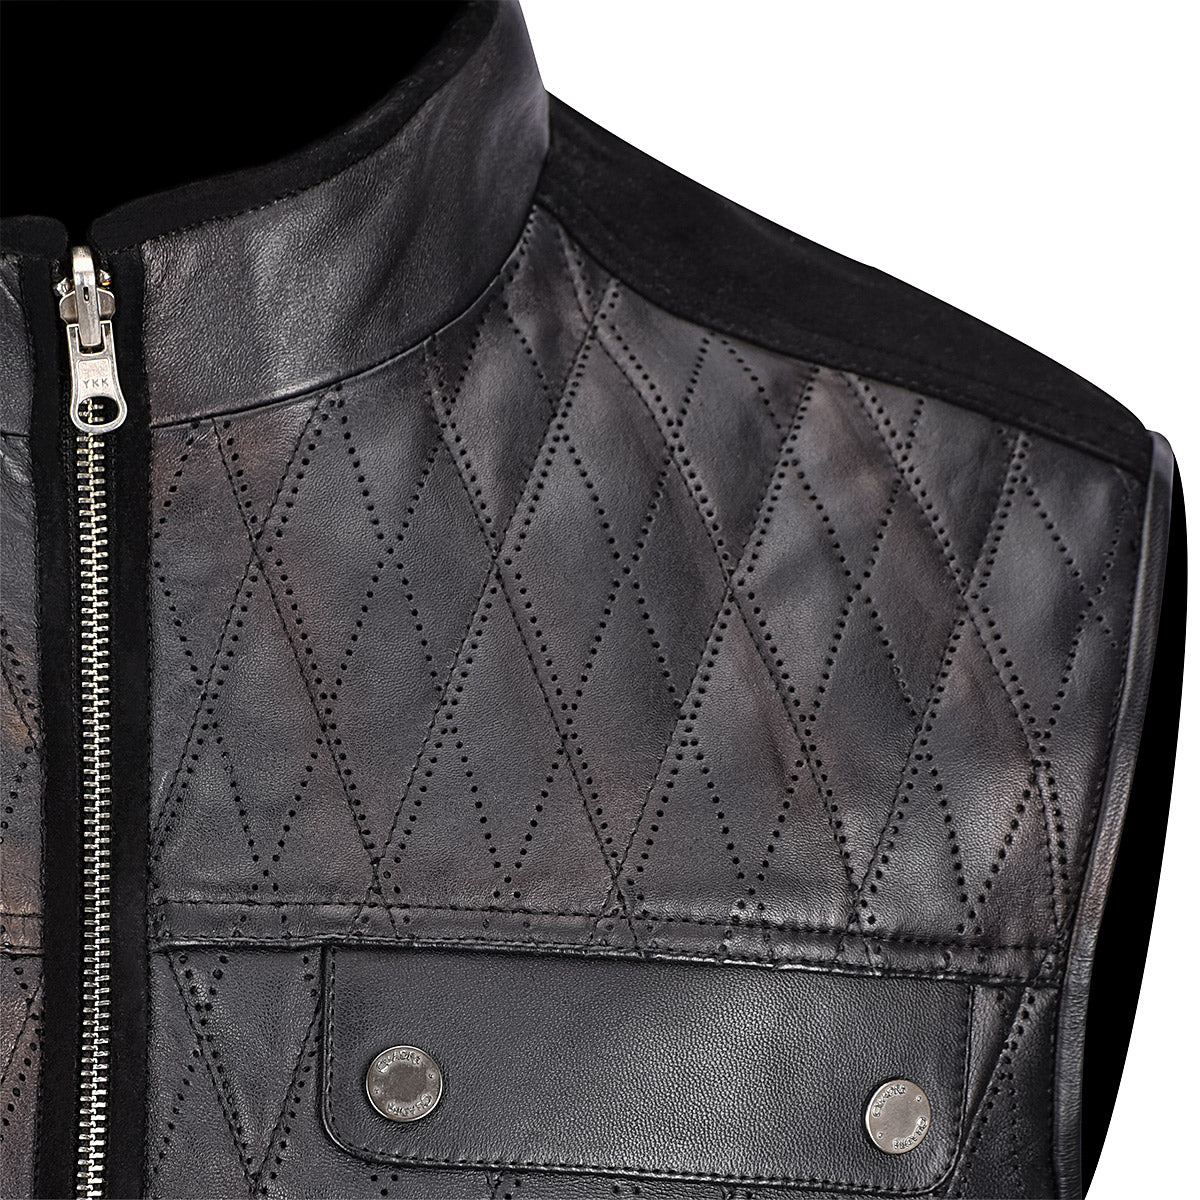 Cuadra Mens doble view black leather vest